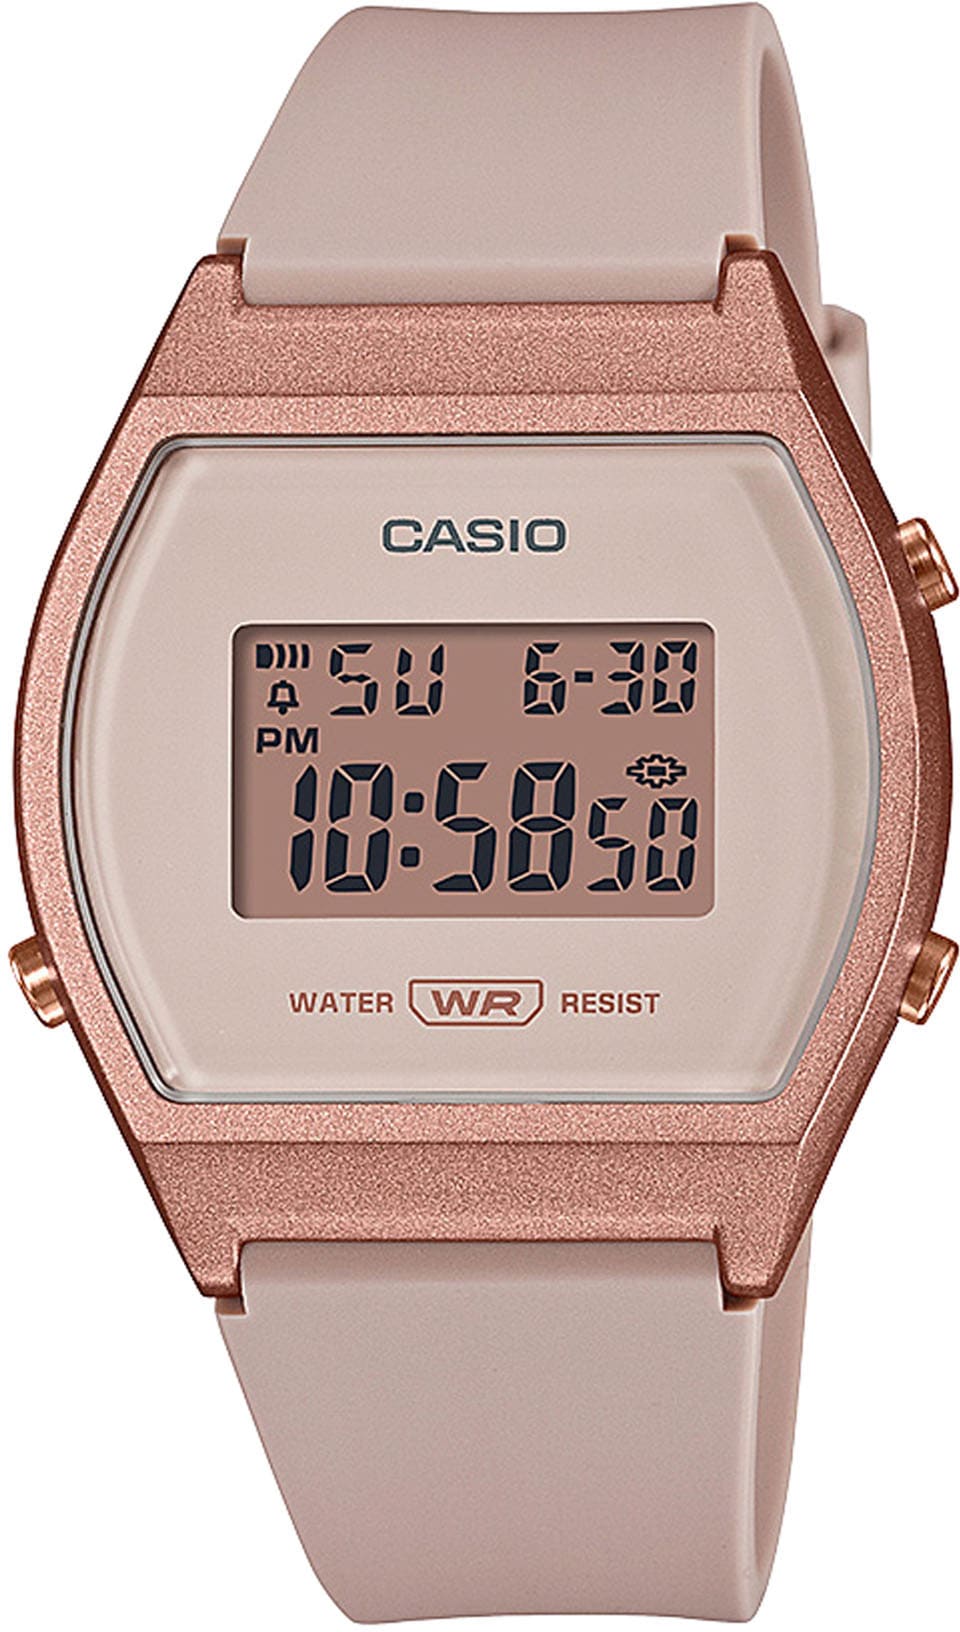 Casio Collection Chronograph »LW-204-4AEF« kaufen bei OTTO